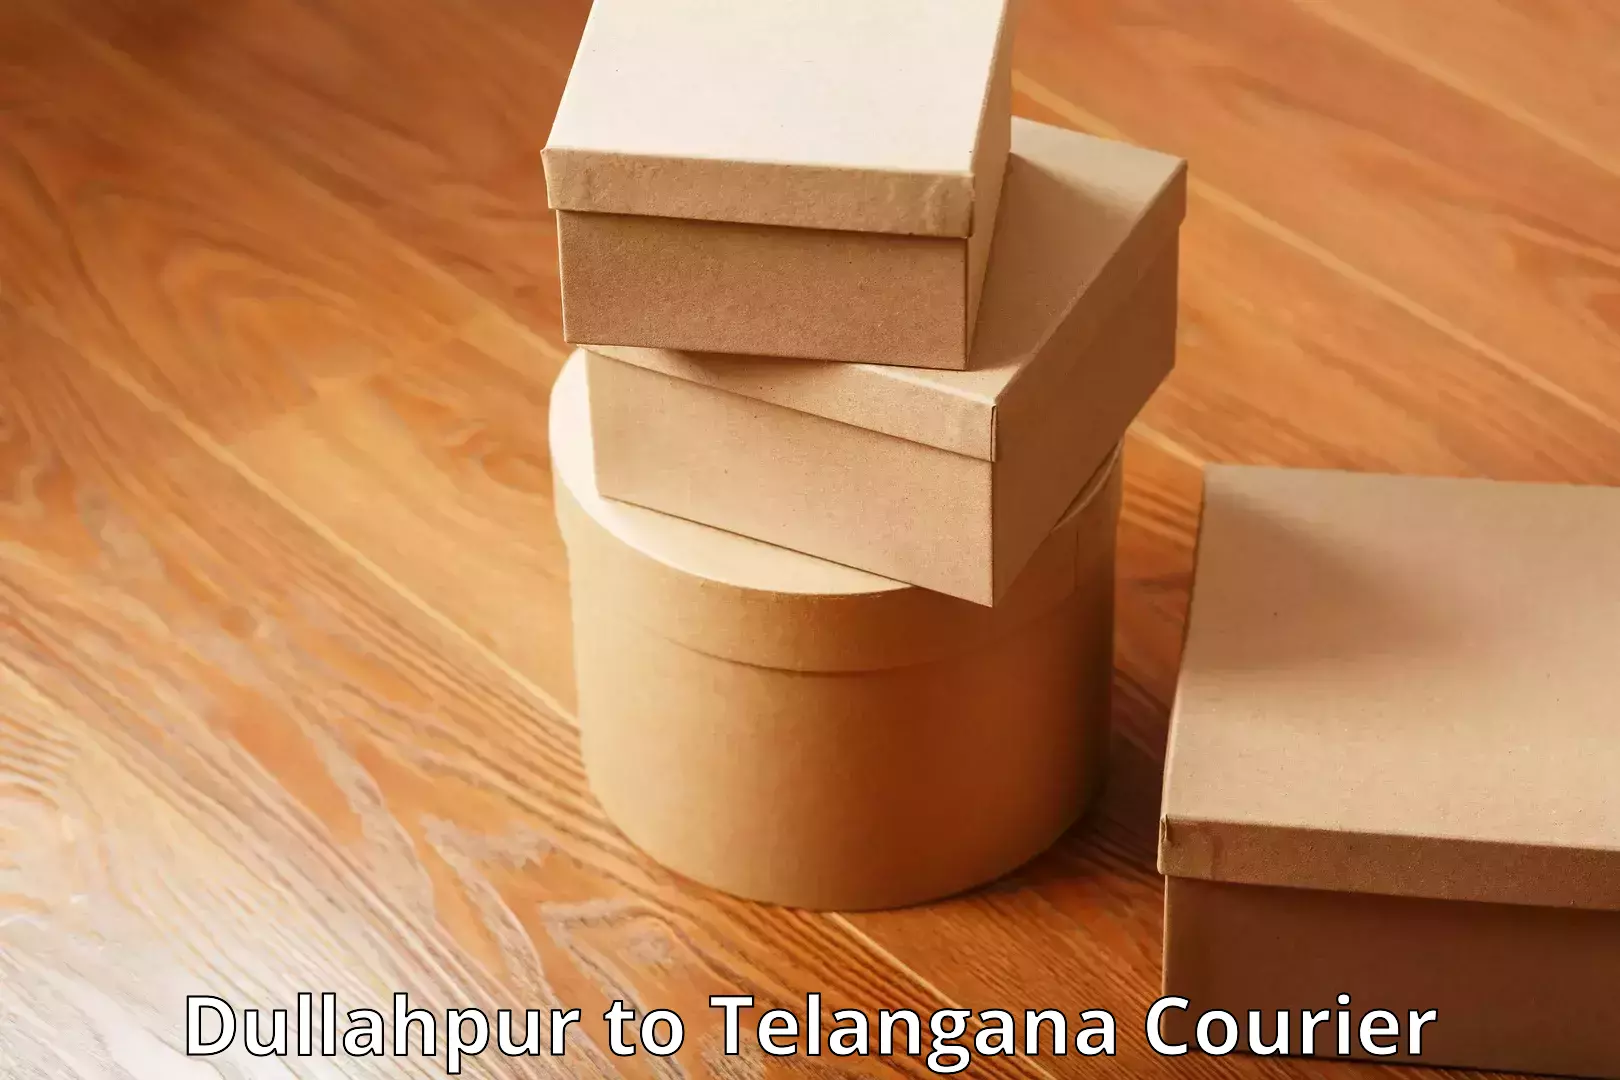 Baggage transport innovation Dullahpur to Telangana